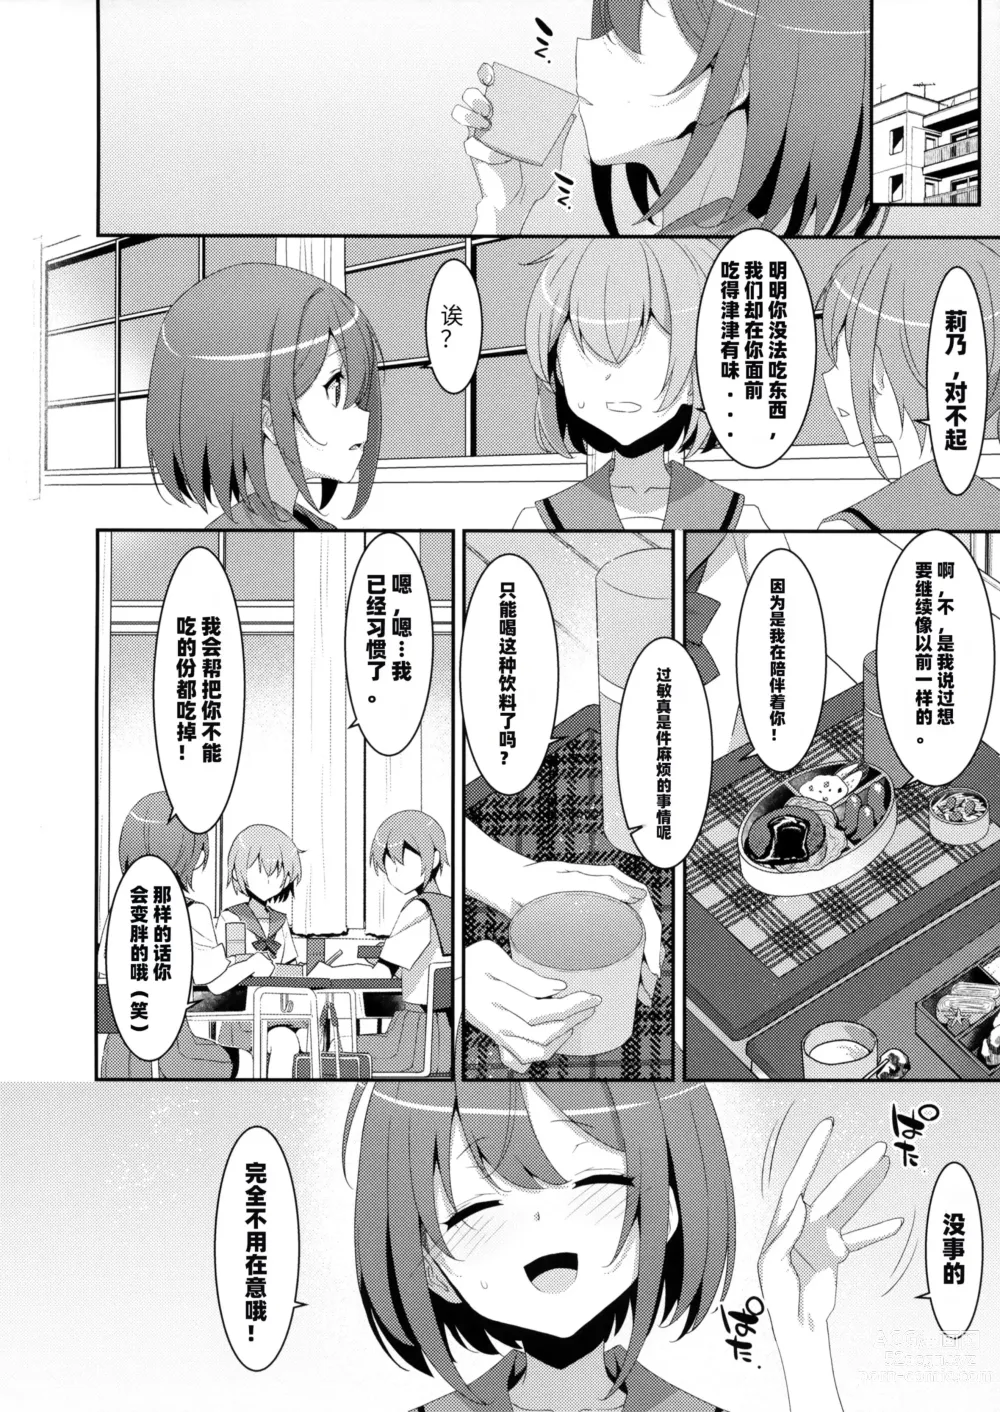 Page 7 of doujinshi 患上魅魔病的她的生活